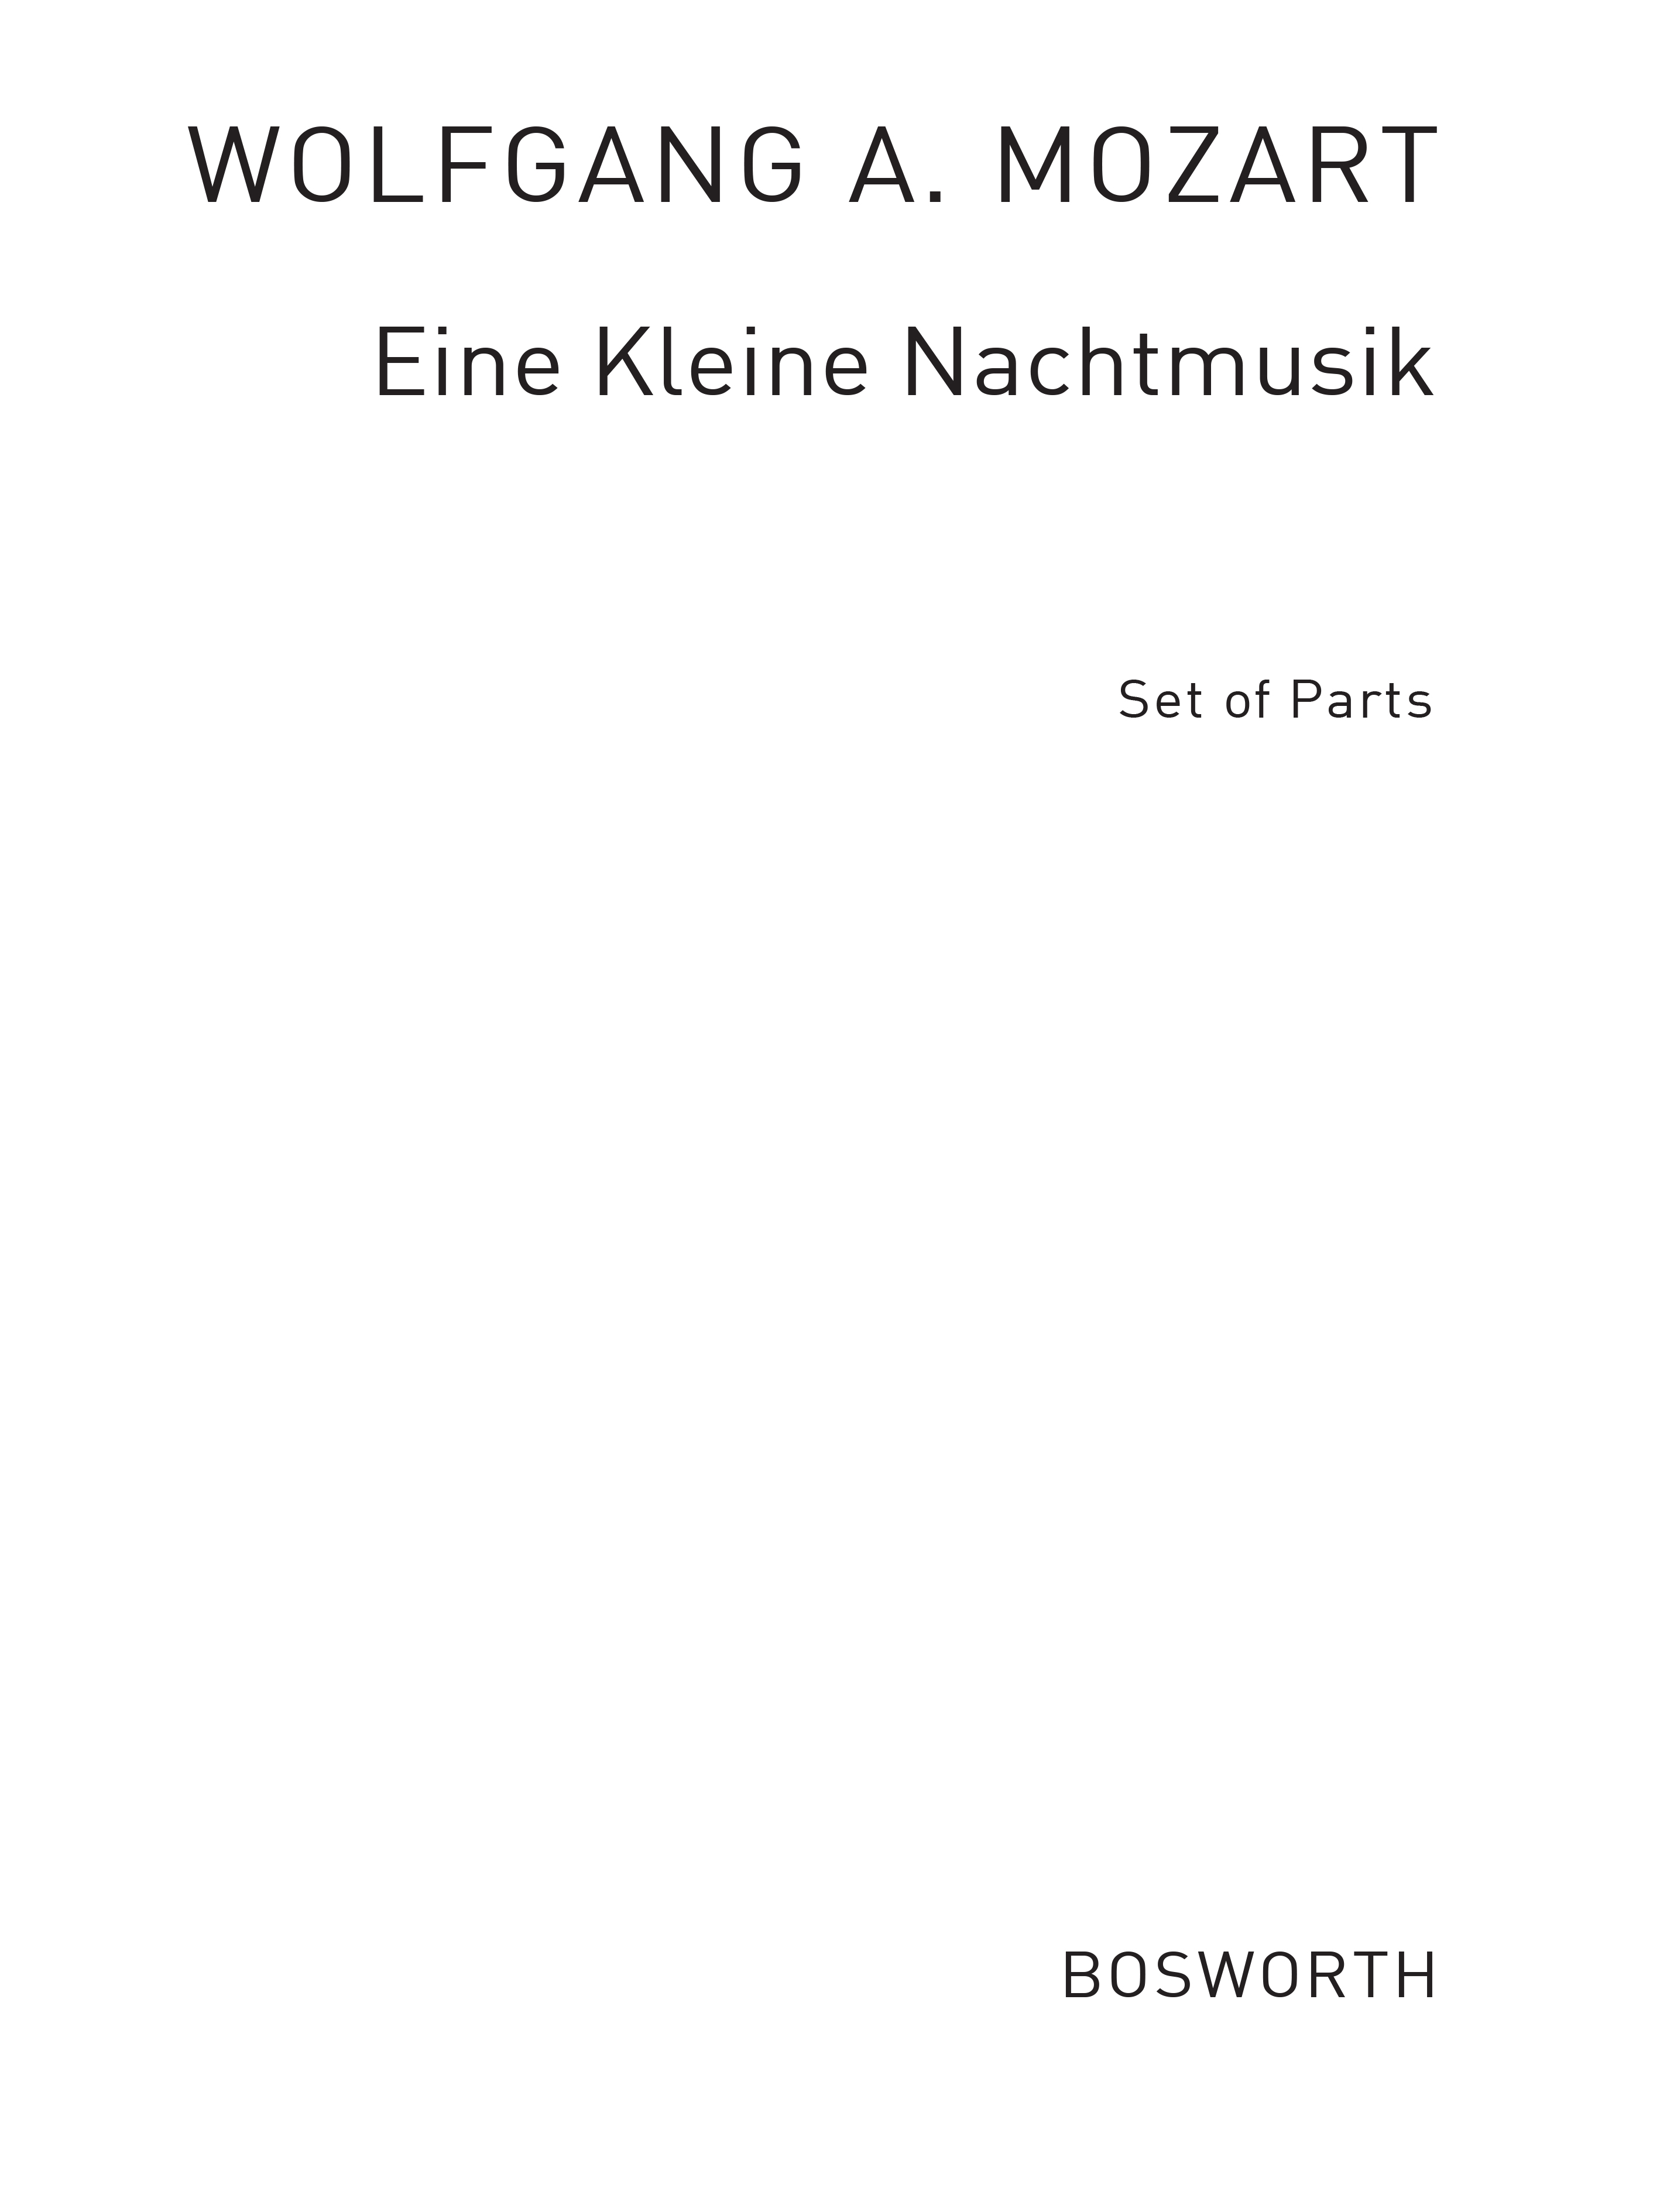 Wolfgang Amadeus Mozart: Eine Kleine Nachtmusik K.525 - First Movement: Recorder